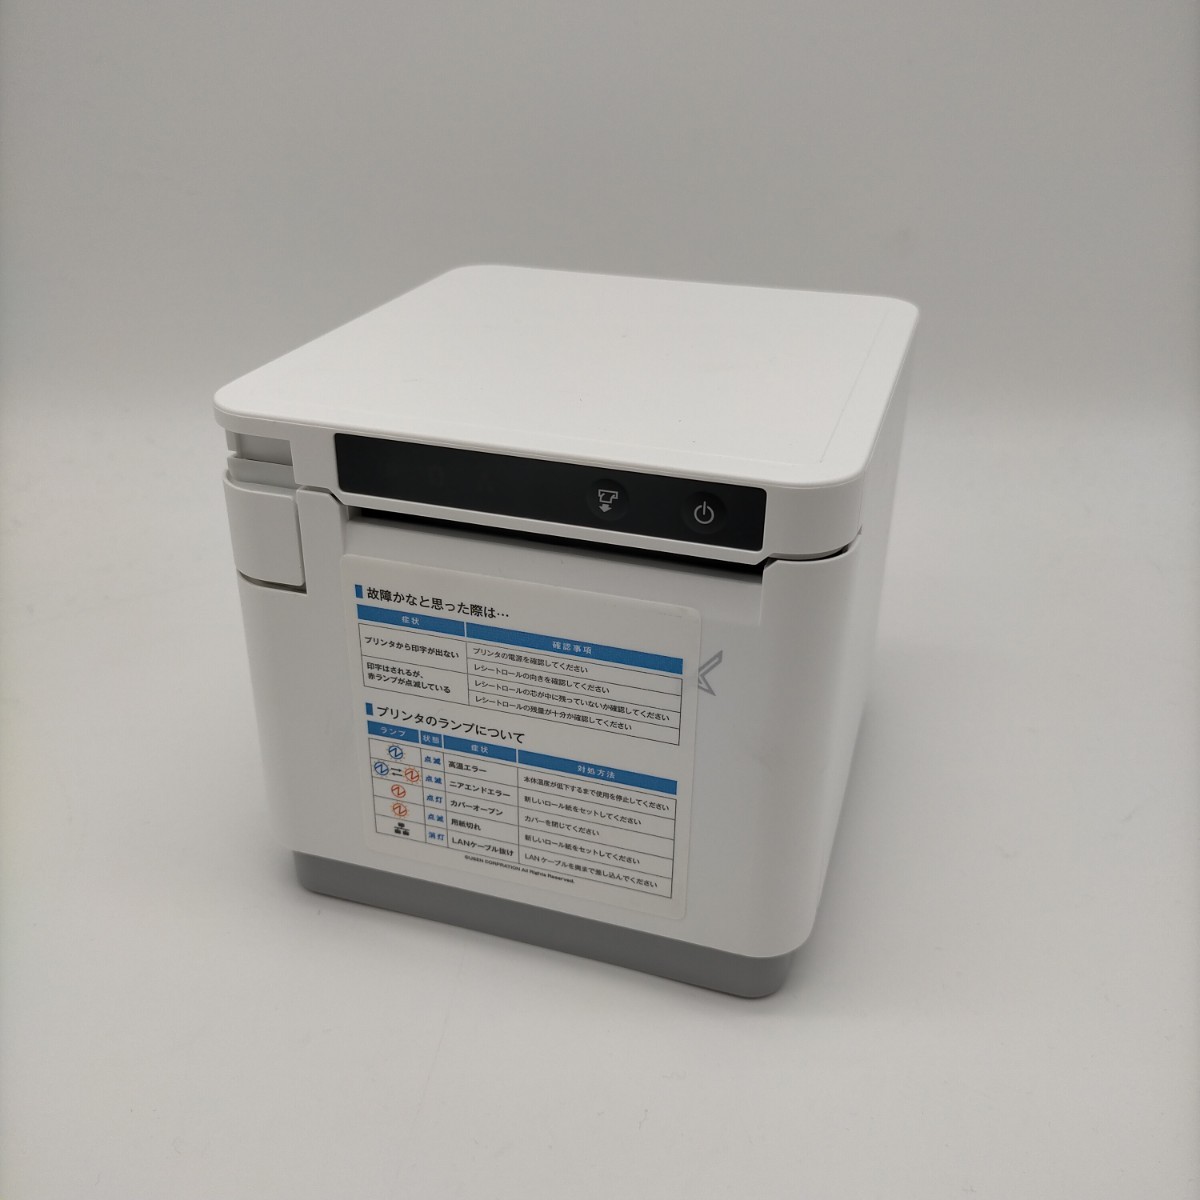 スマレジ・エアレジ対応プリンター・レジセット mC-Print3 SMD146M 